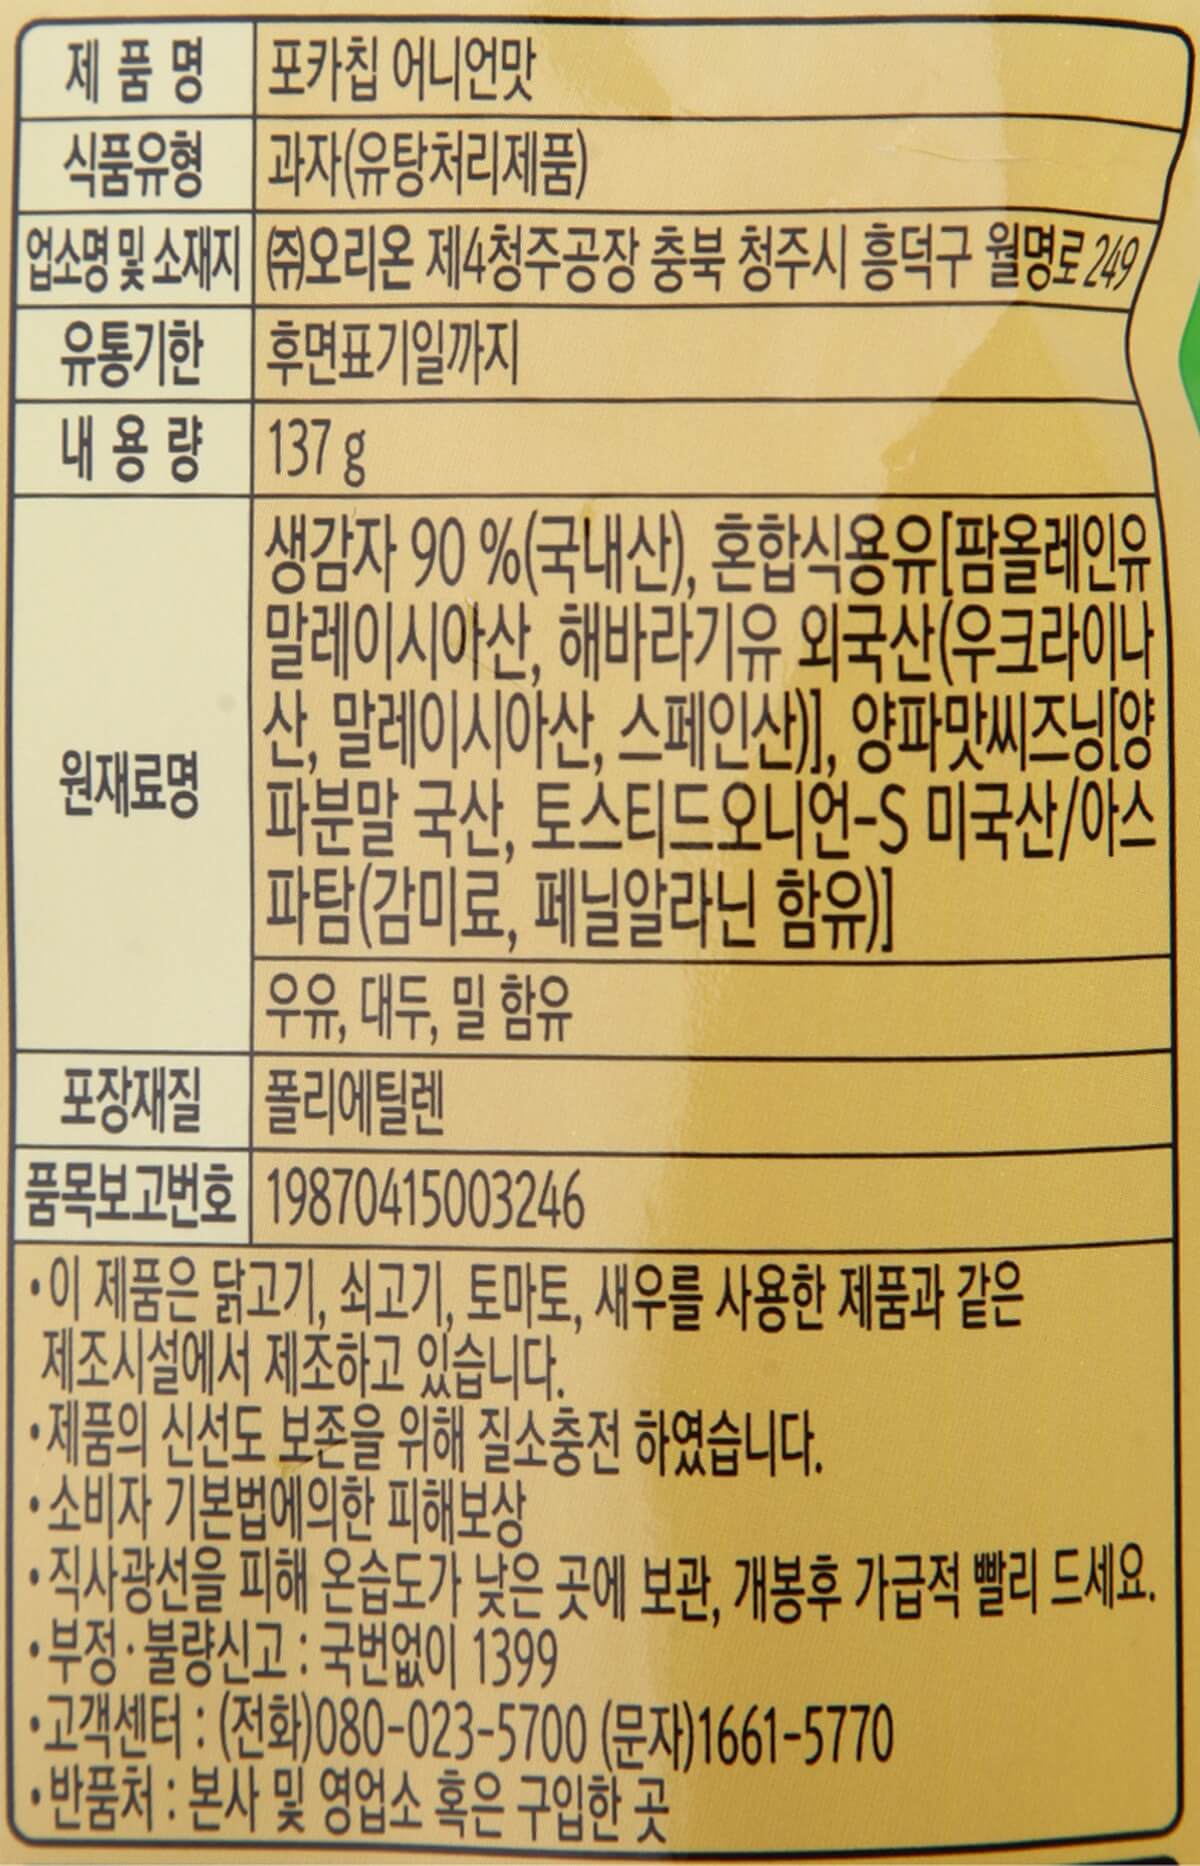 韓國食品-[오리온] 포카칩[어니언맛] 60g